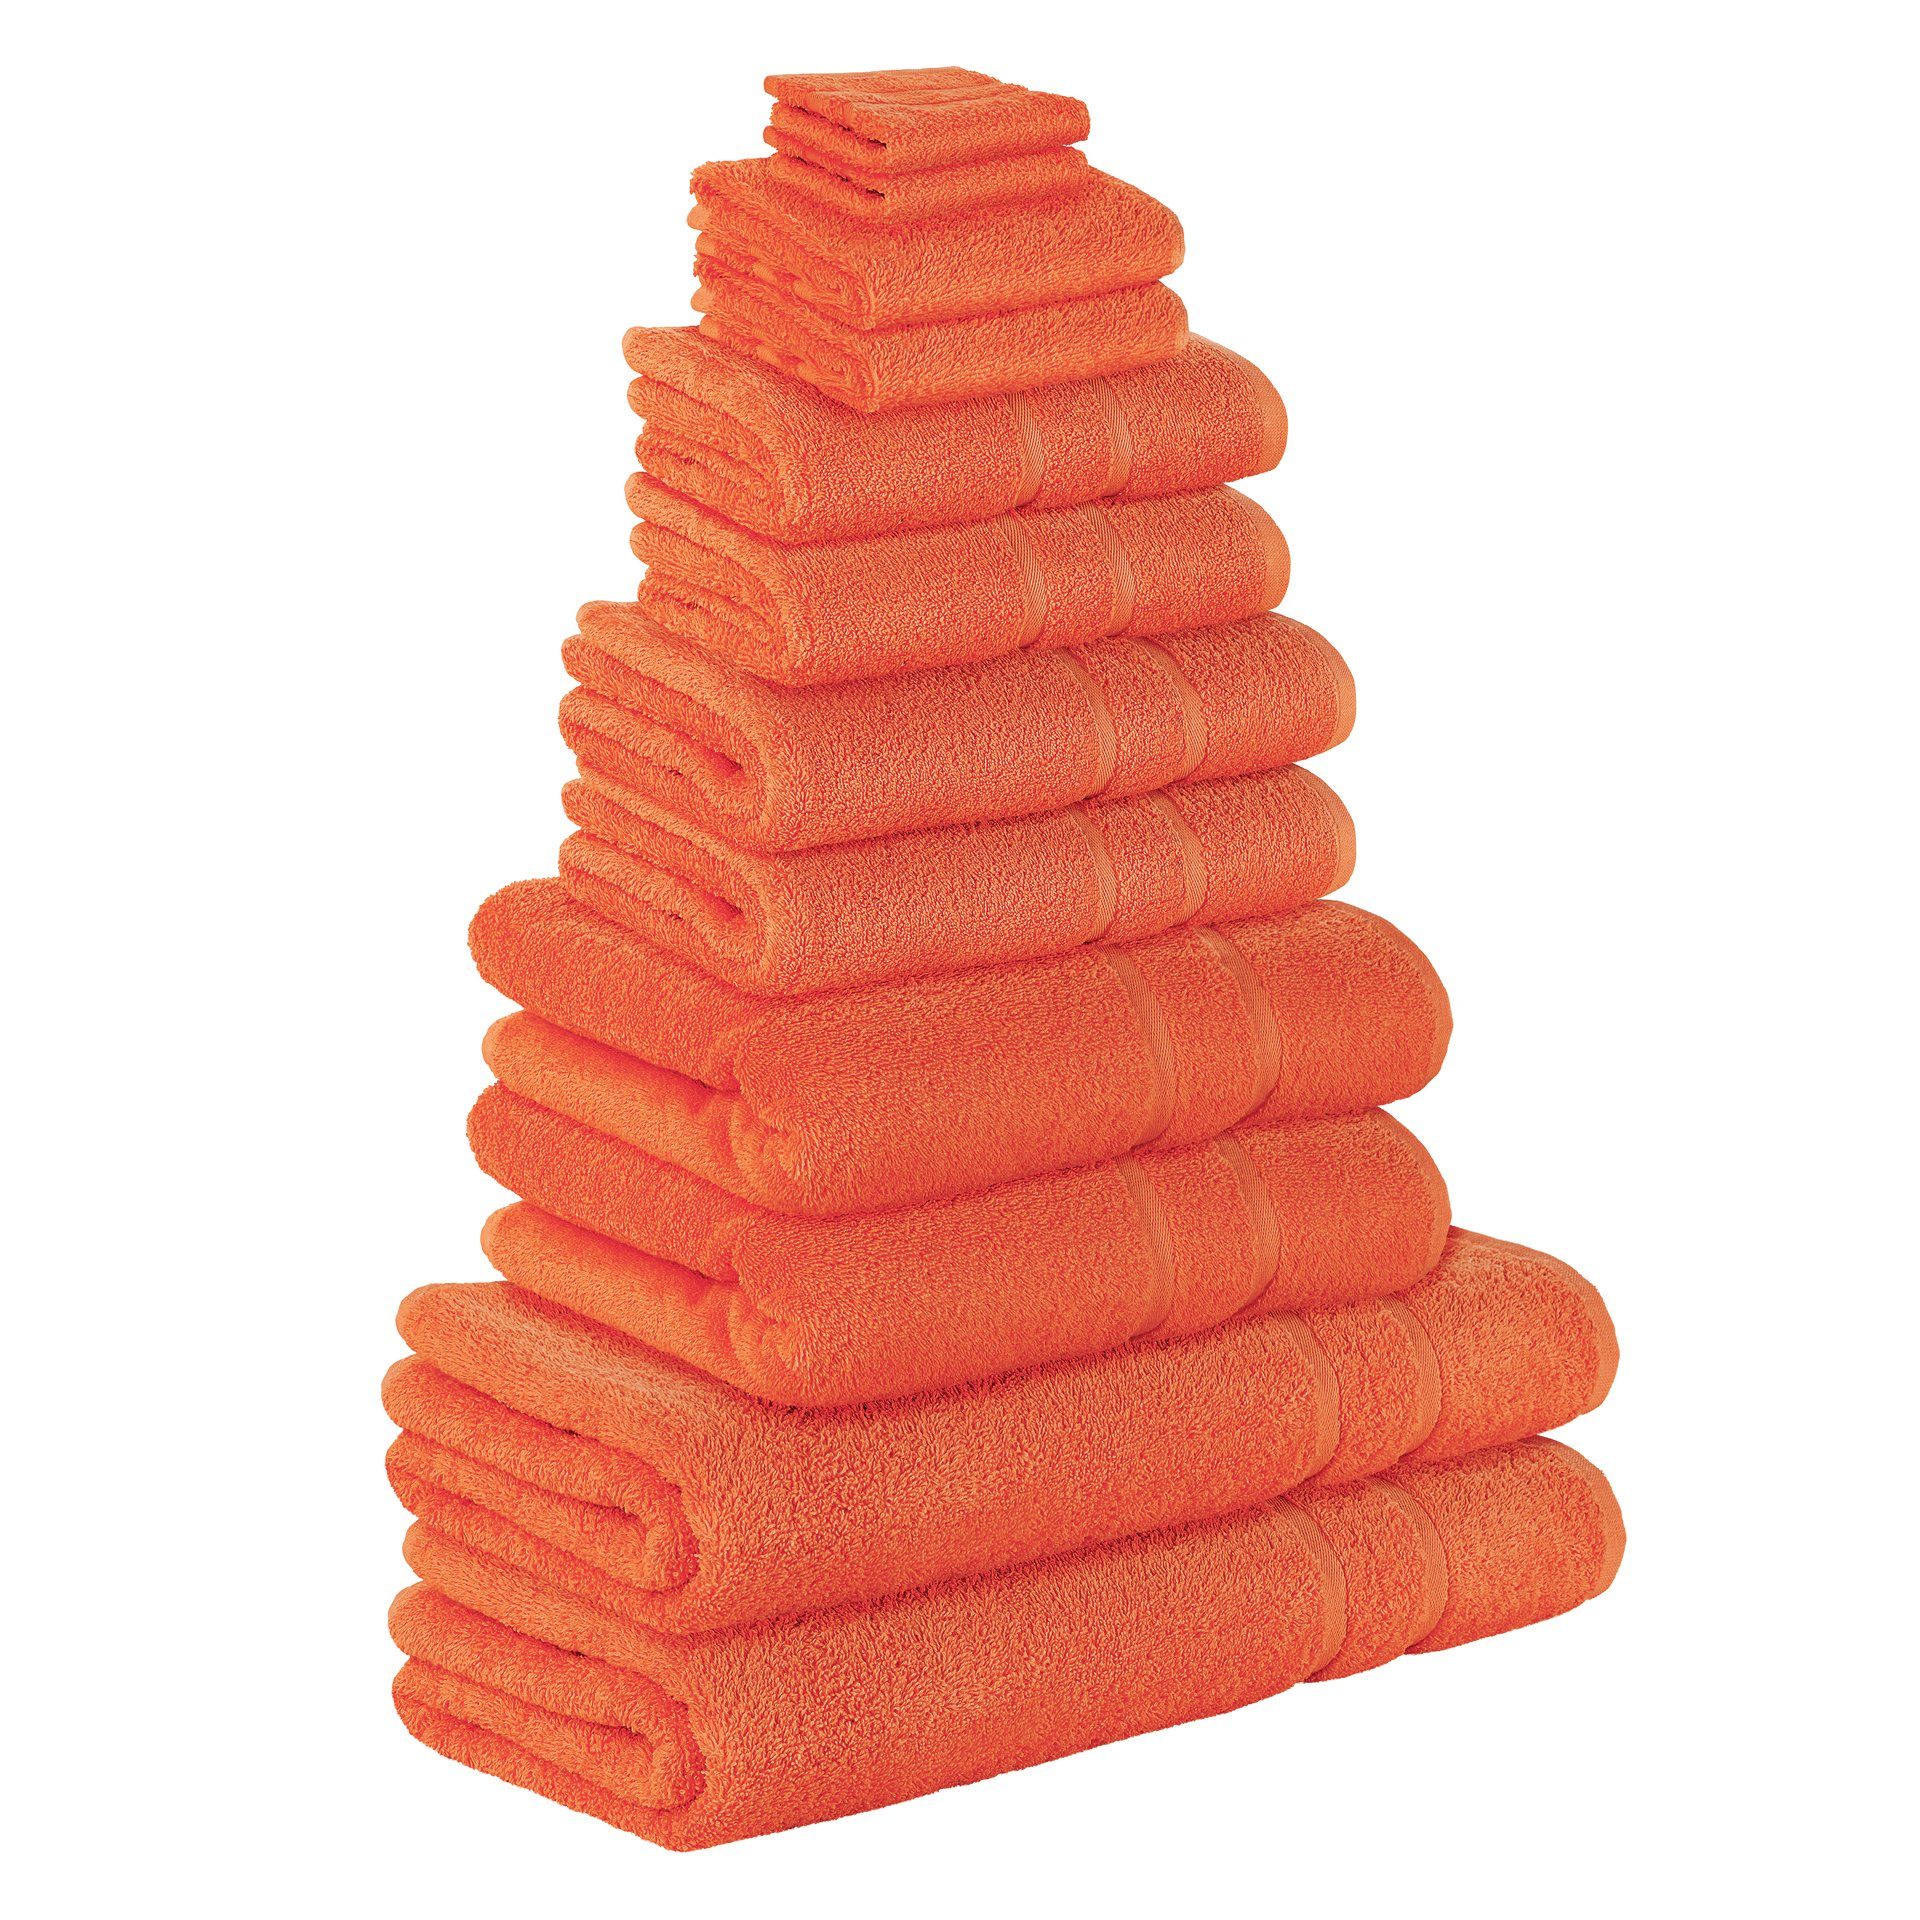 StickandShine Handtuch Set 2x Handschuh 2x Gästehandtuch 2x Handtücher 2x Duschtücher 2x Badetücher 2x Saunatücher als SET in verschiedenen Farben (12Teilig) 100% Baumwolle 500 GSM Frottee 12er Handtuch Pack, (Spar-set), 100% Baumwolle 500 GSM Orange